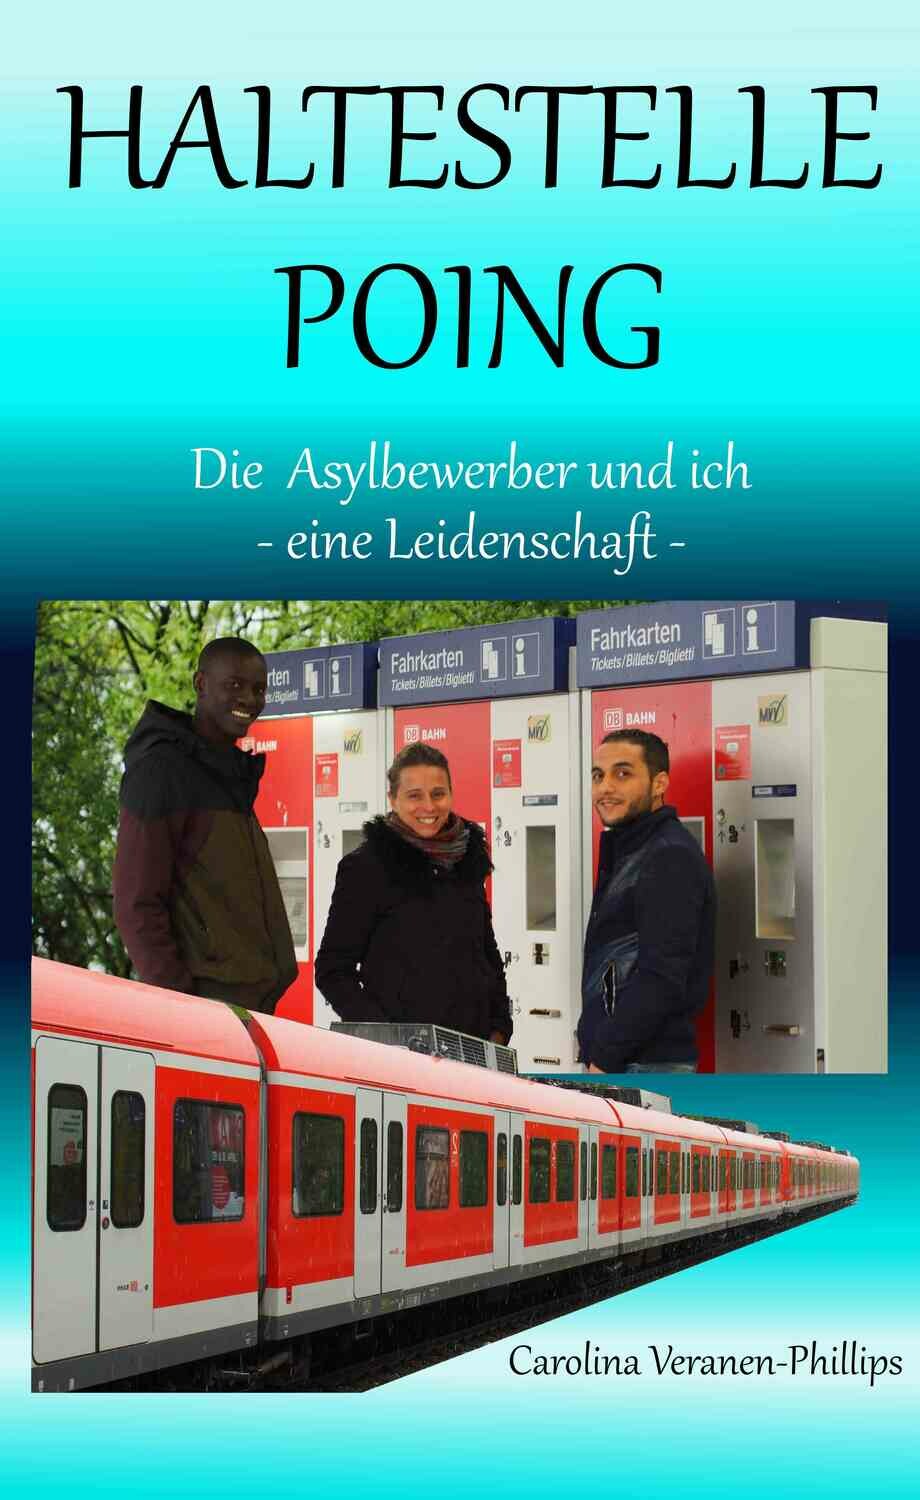 Buch HALTESTELLE POING - Die Asylbewerber und ich (auf Deutsch)